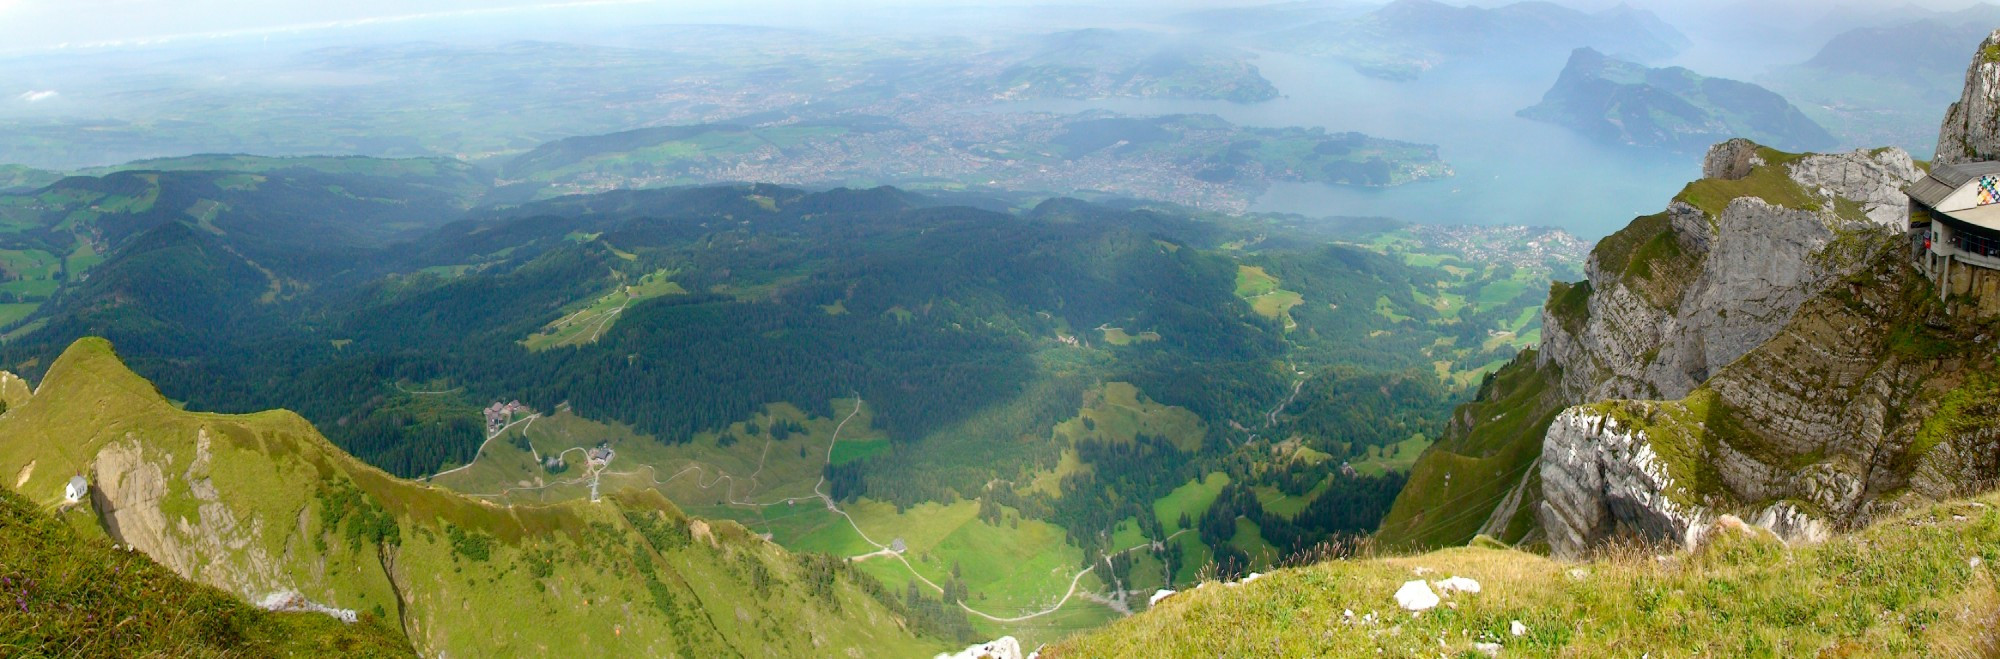 Панорамный вид с горы Пилатус на озеро Четырёх лесных кантонов.